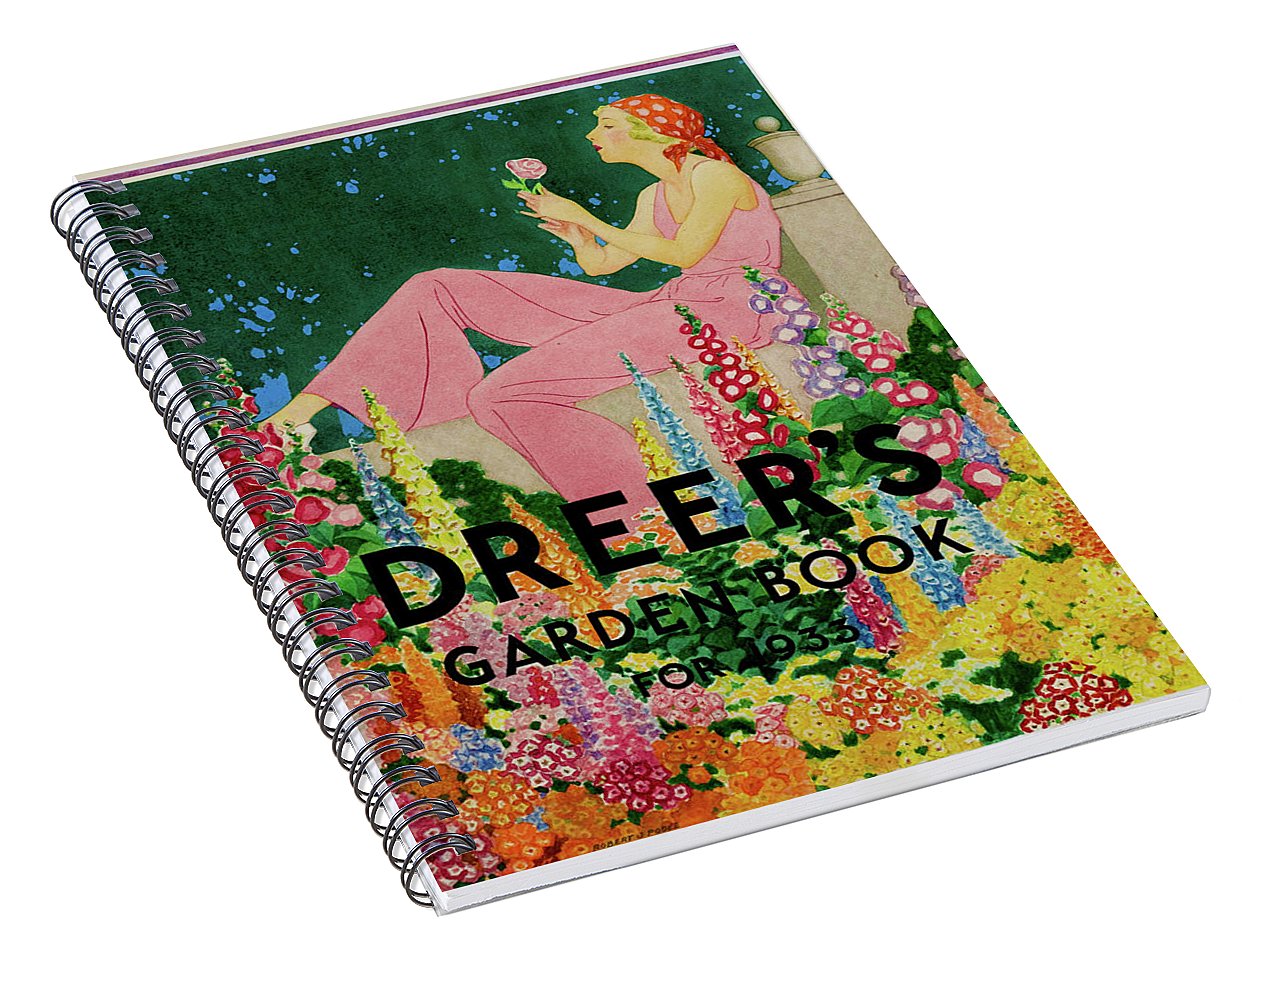 Dreers Garden 2 - Spiral Notebook